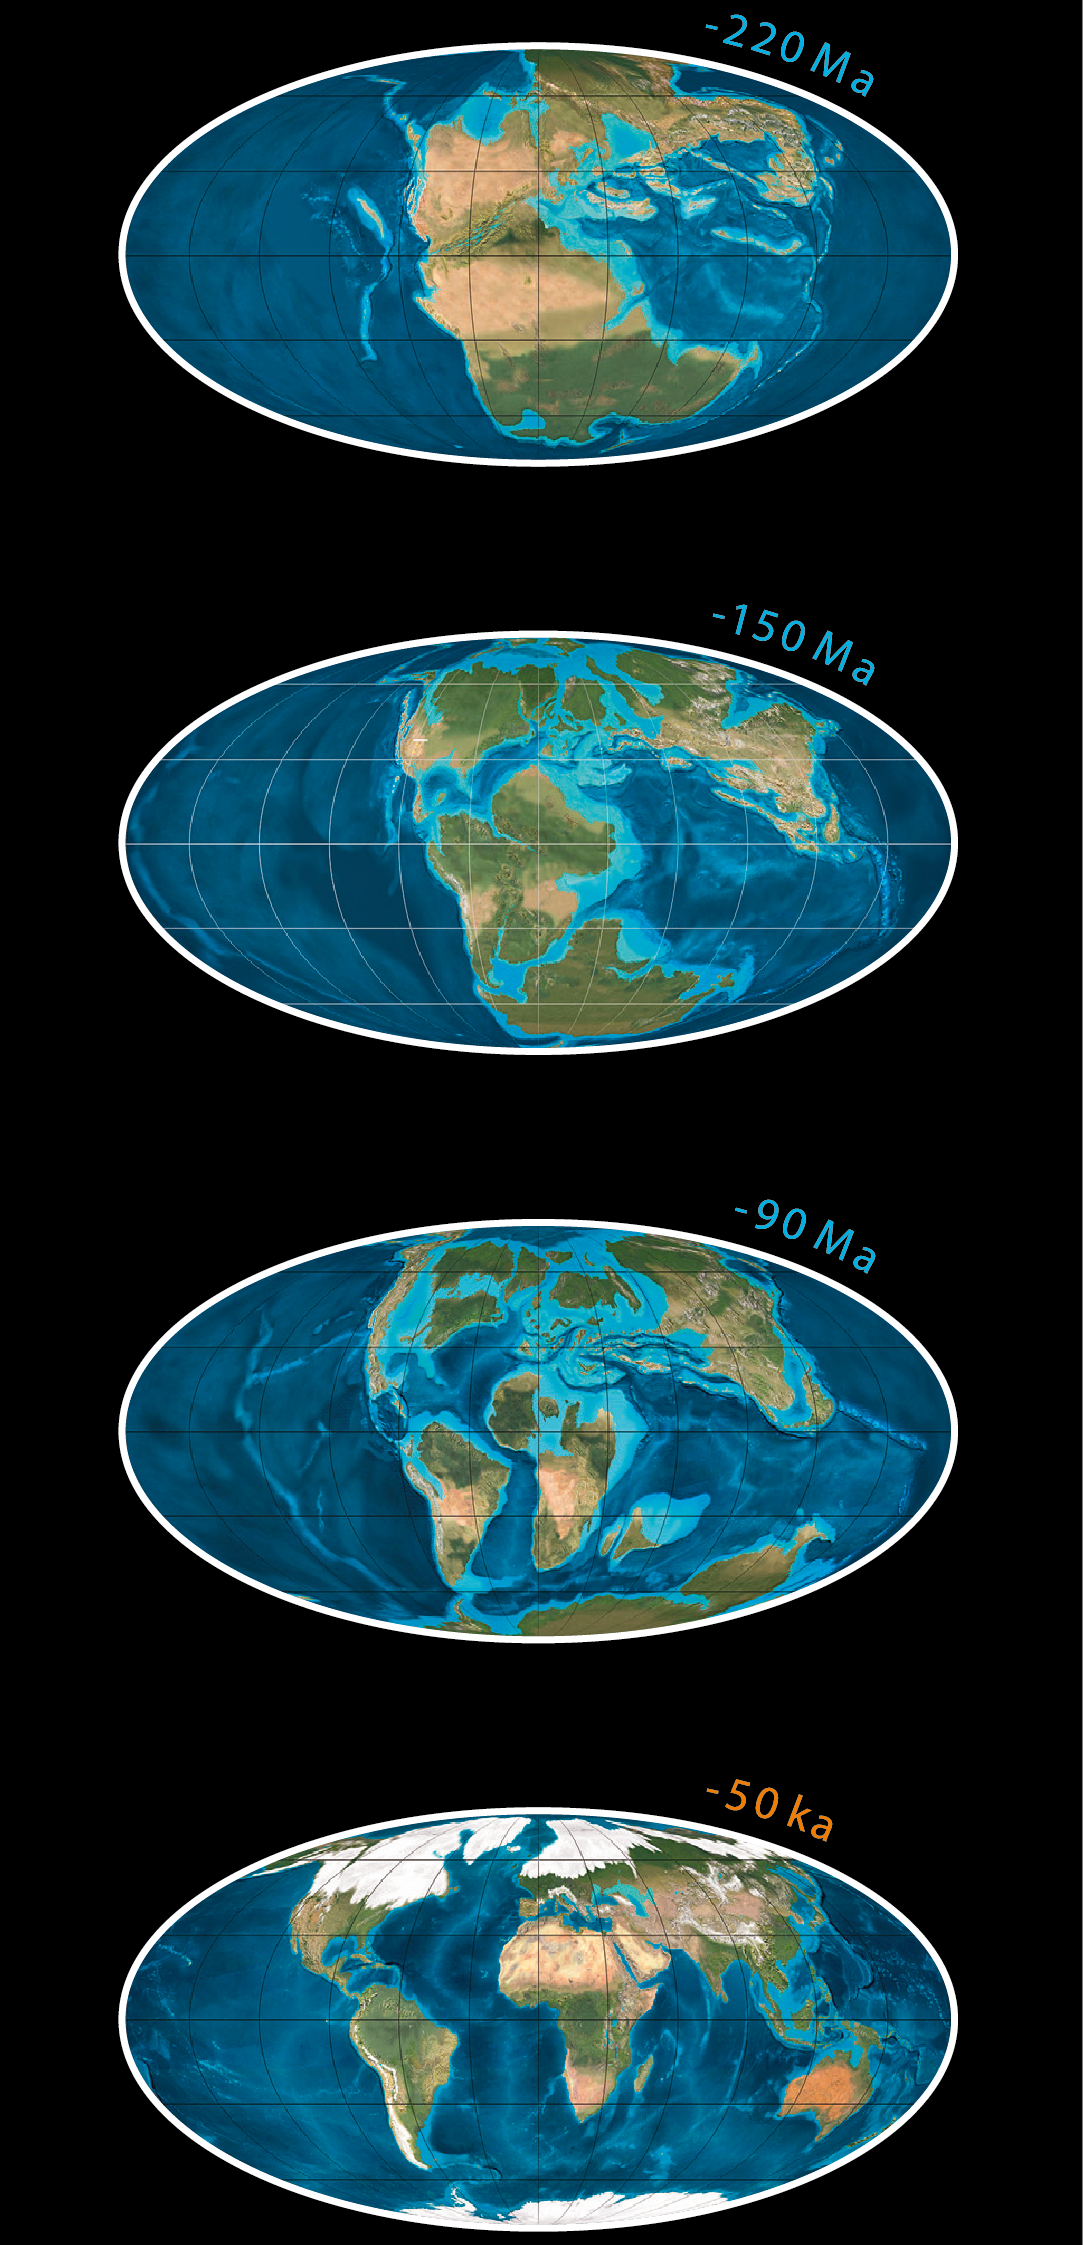 Quattro immagini della Terra che mostrano il movimento dei continenti nel corso di milioni di anni.